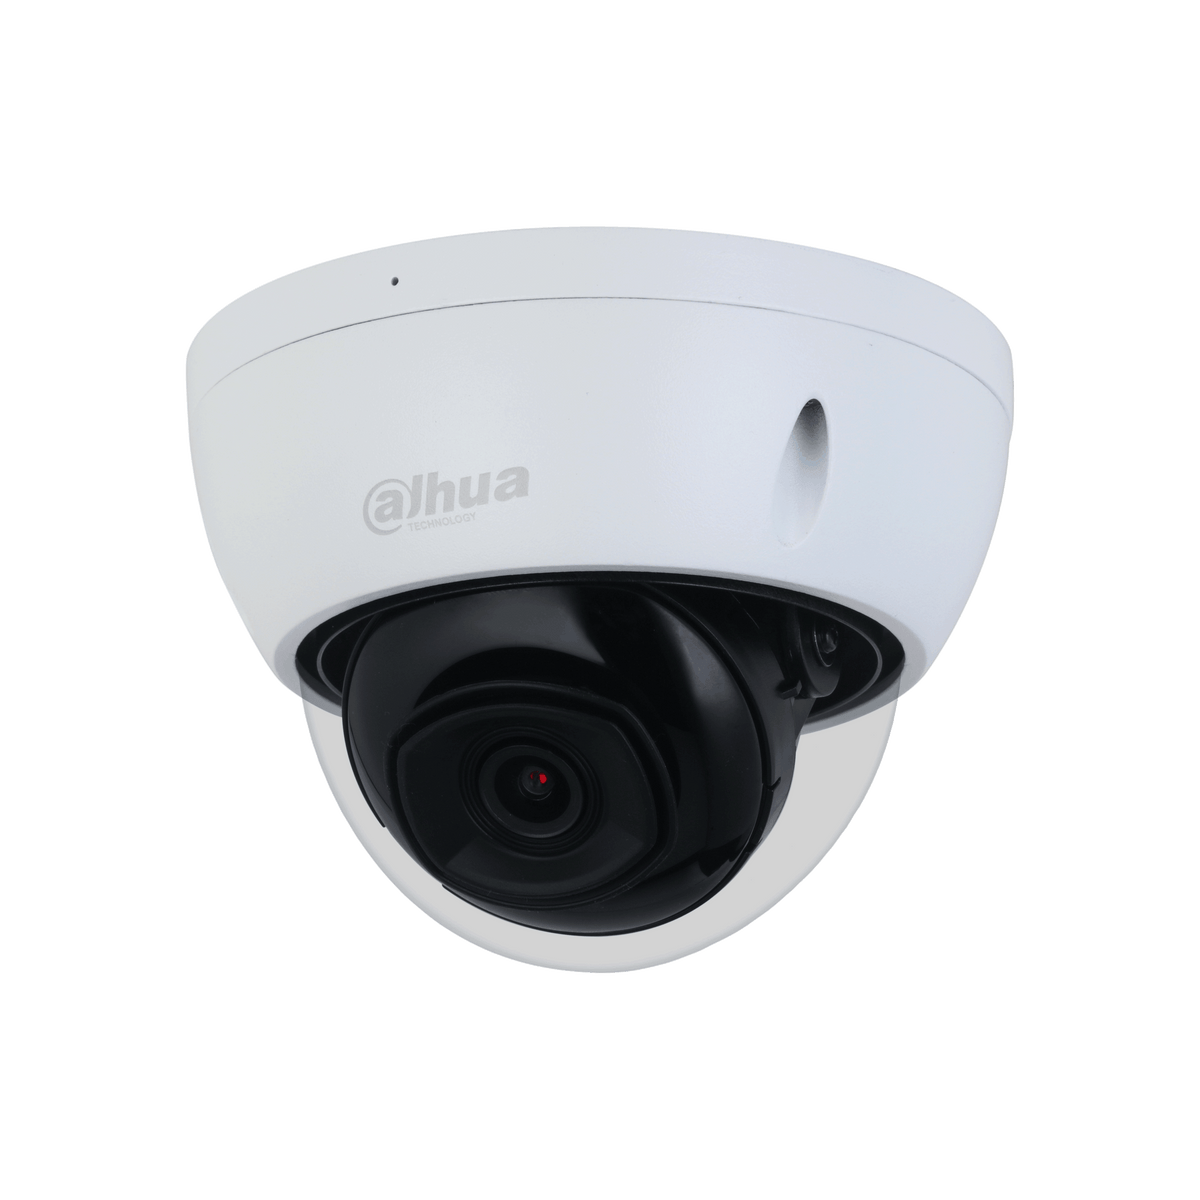 DAHUA IPC-HDBW2541E-S(Only For Project) DAHUA IPC-HDBW2541E-S(OnlyForProject) 5MP IR Fixed-focal Dome WizSense Network Camera